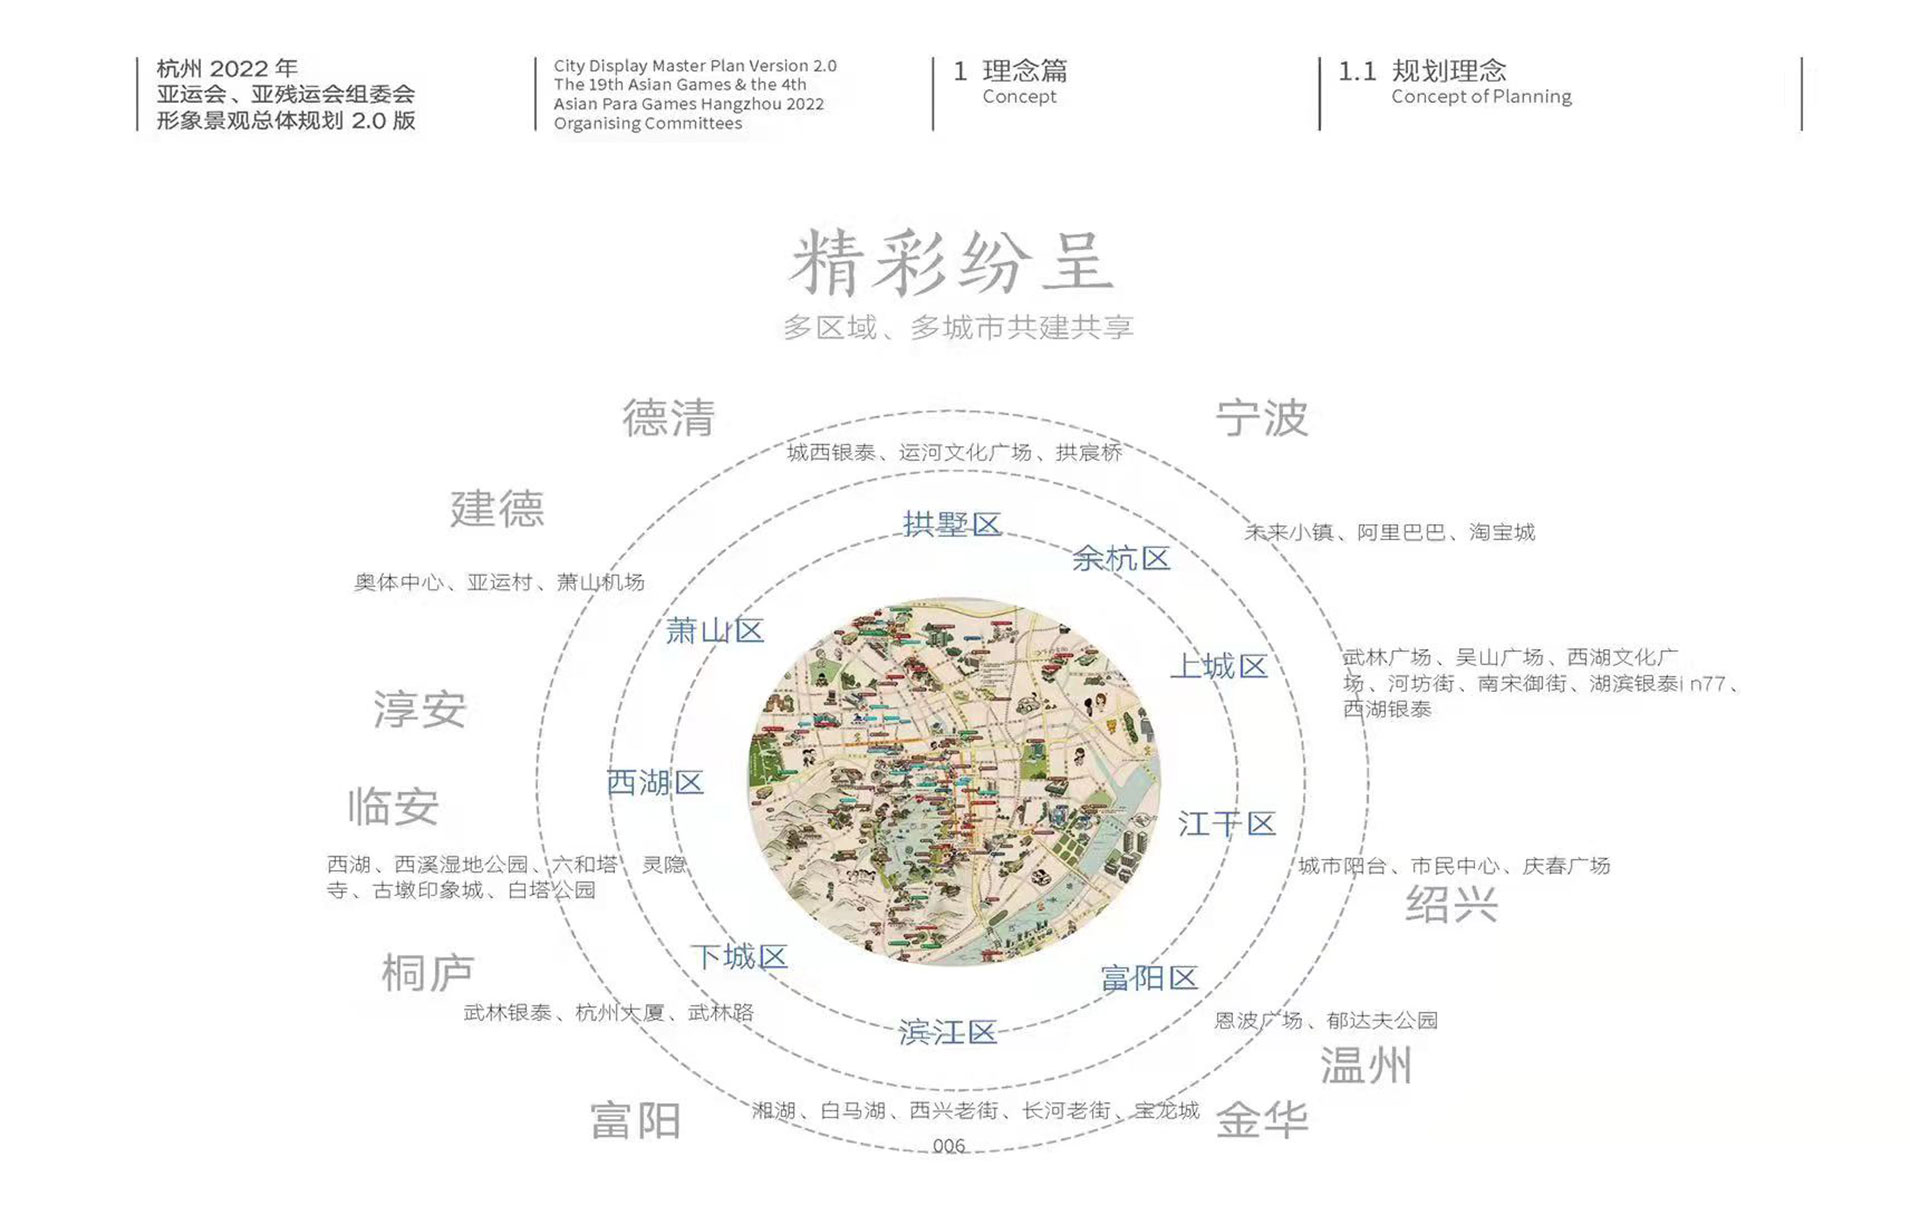 杭州亚运会、亚残运会形象景观总体规划